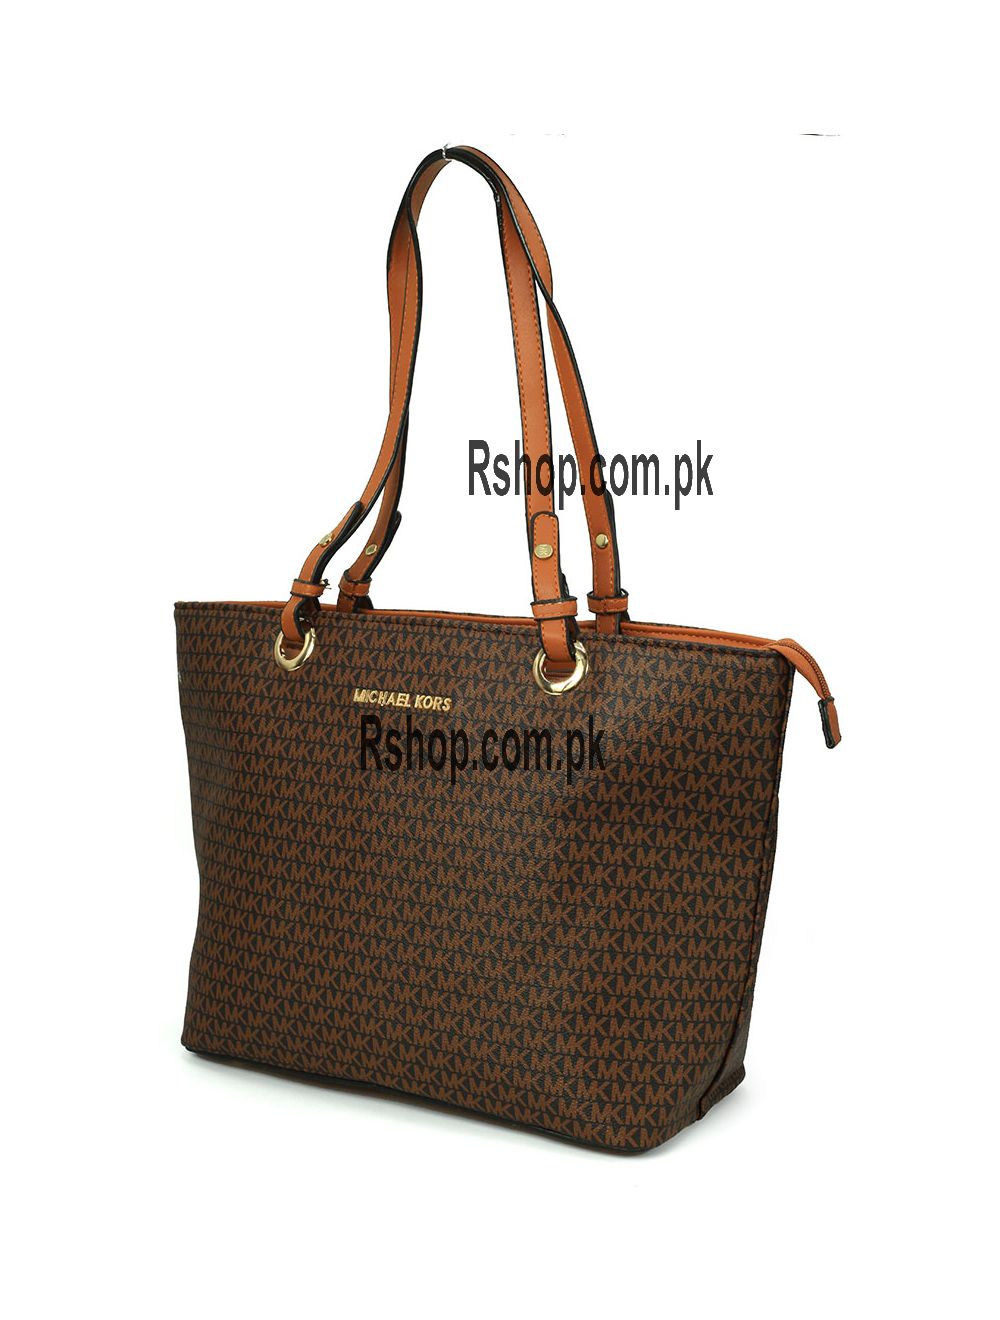 MK designer handbags